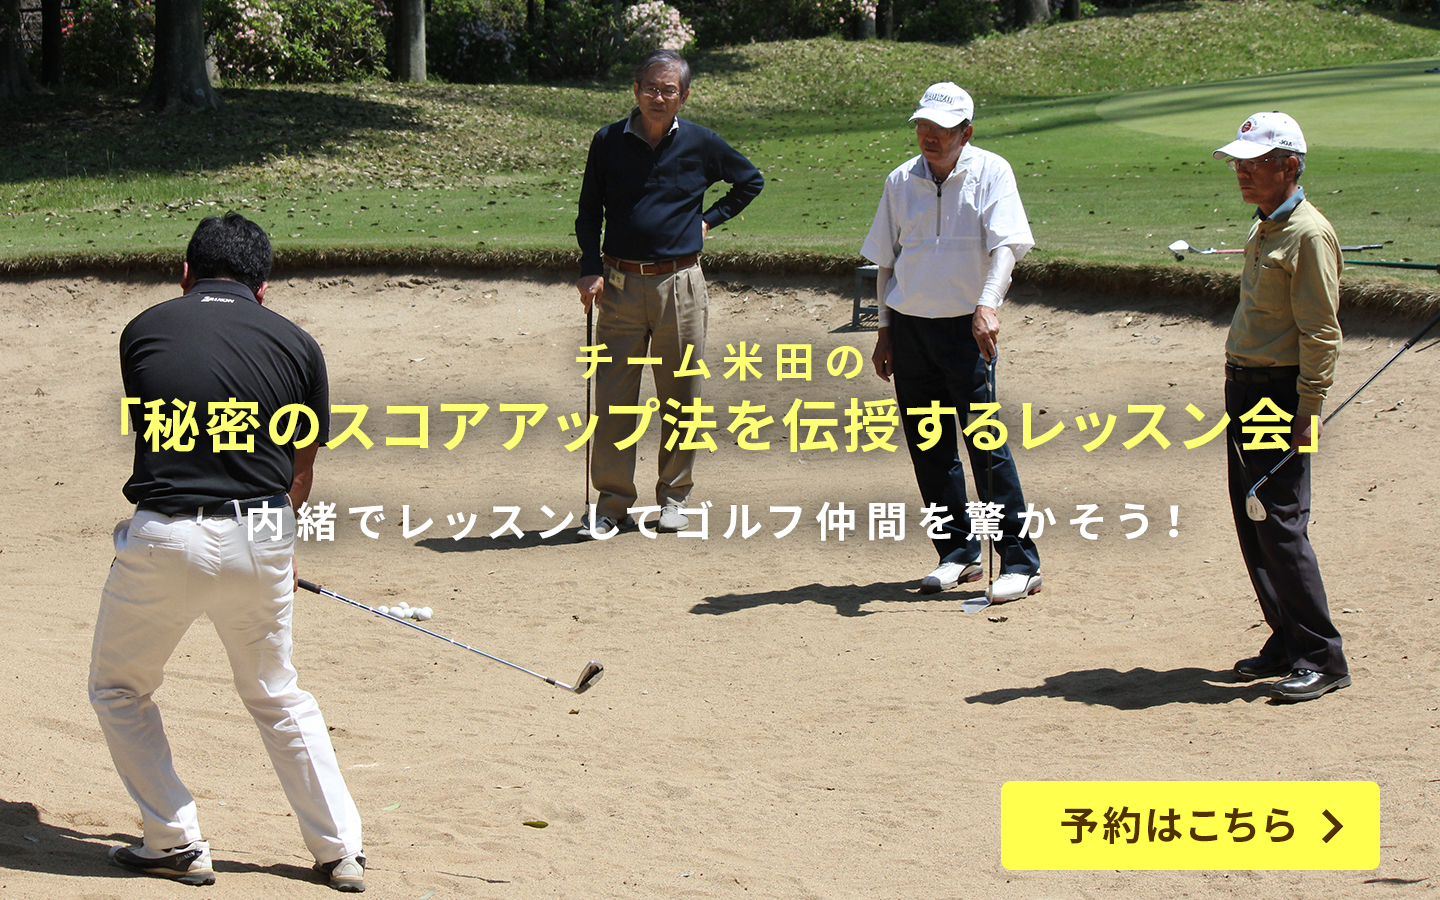 内緒でレッスンしてゴルフ仲間を驚かそう!「チーム米田の秘密スコアアップ法を伝授するレッスン会」